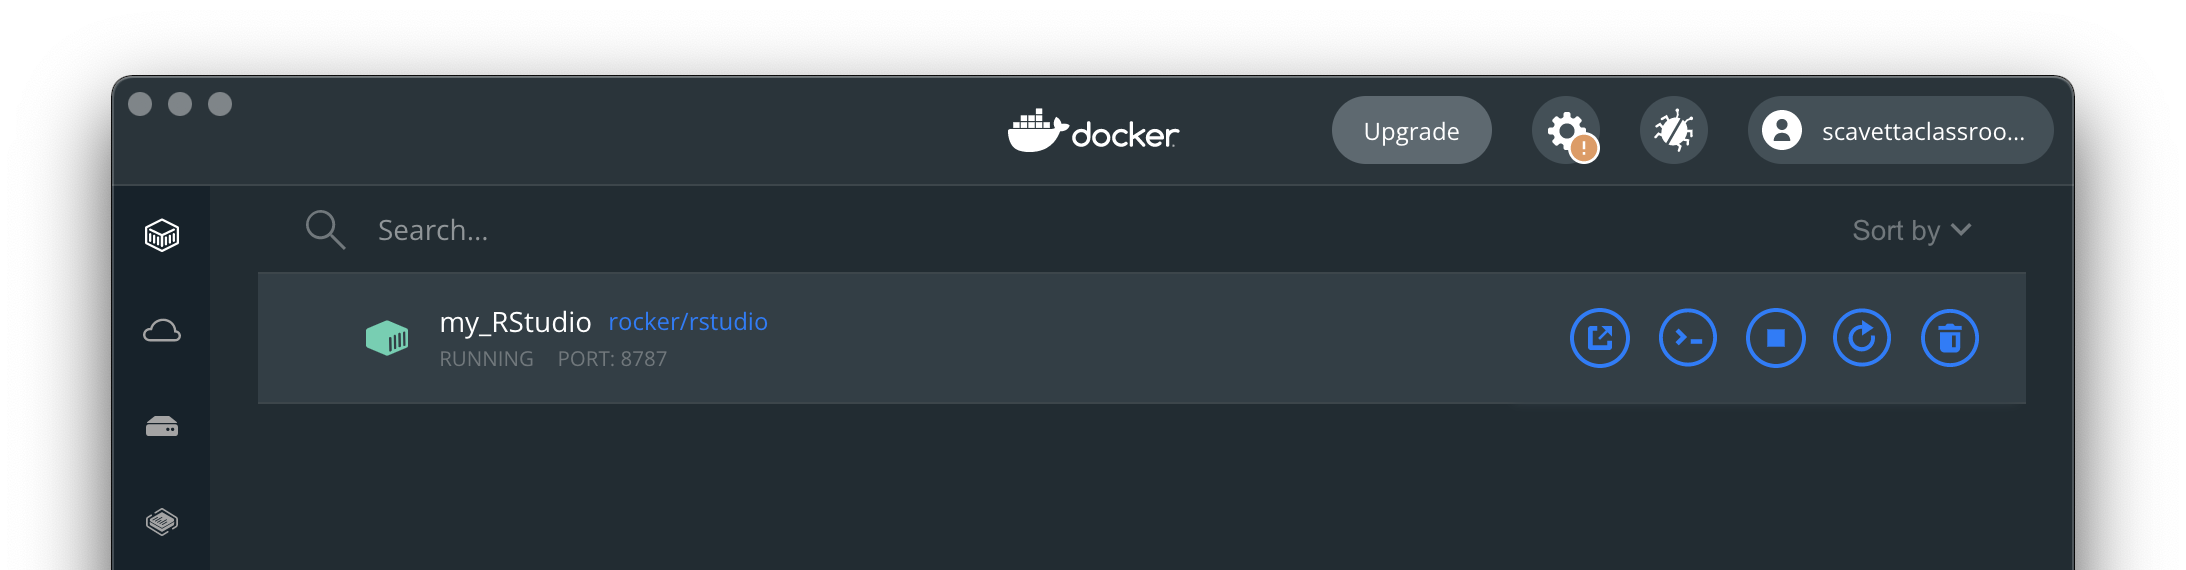 Running containers in Docker Desktop